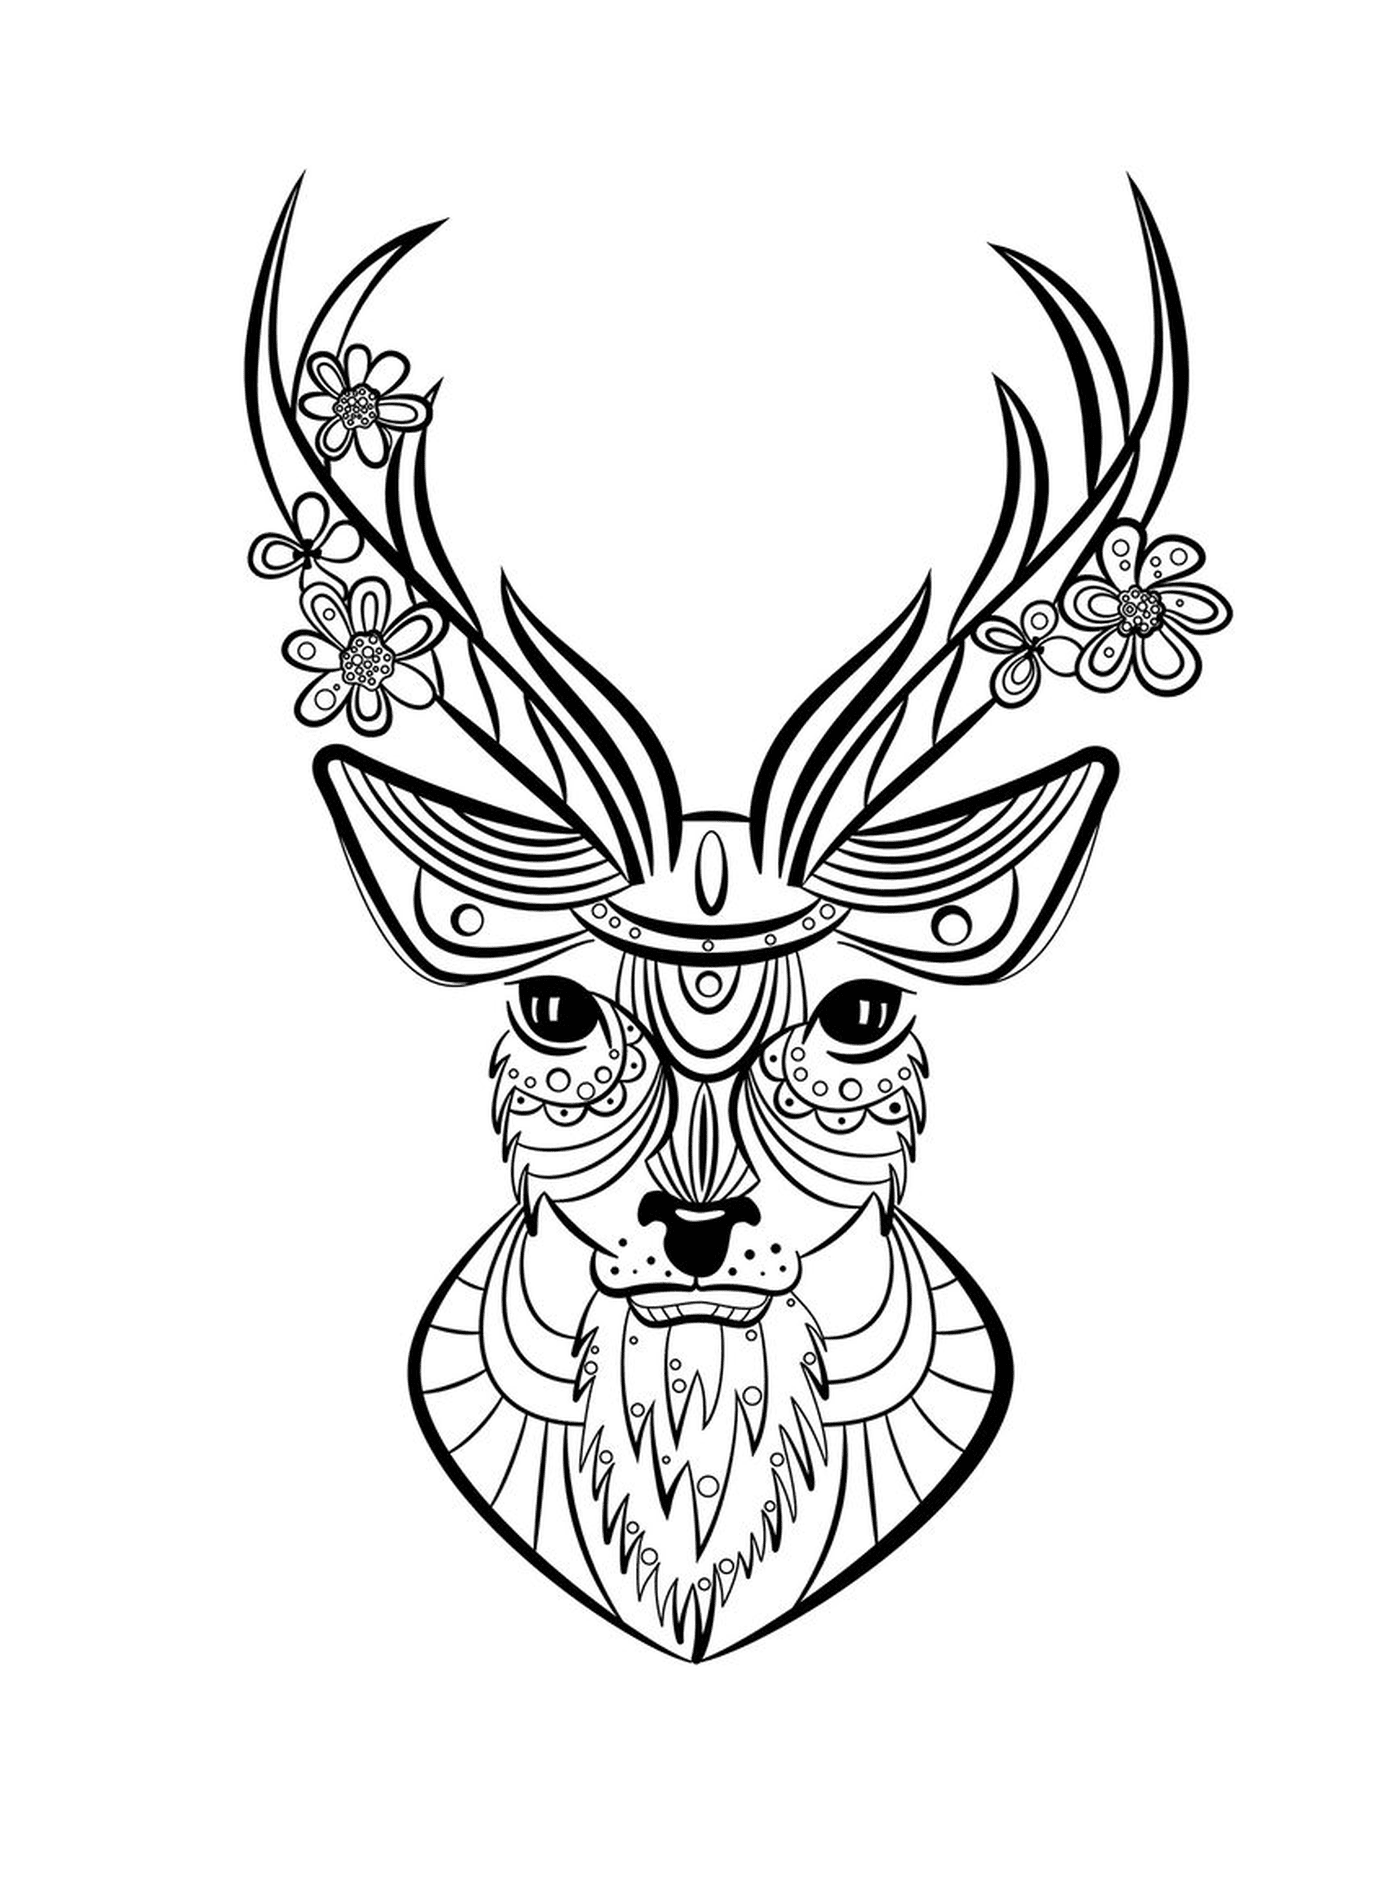  Cerf com uma cabeça decorada com motivos florais 